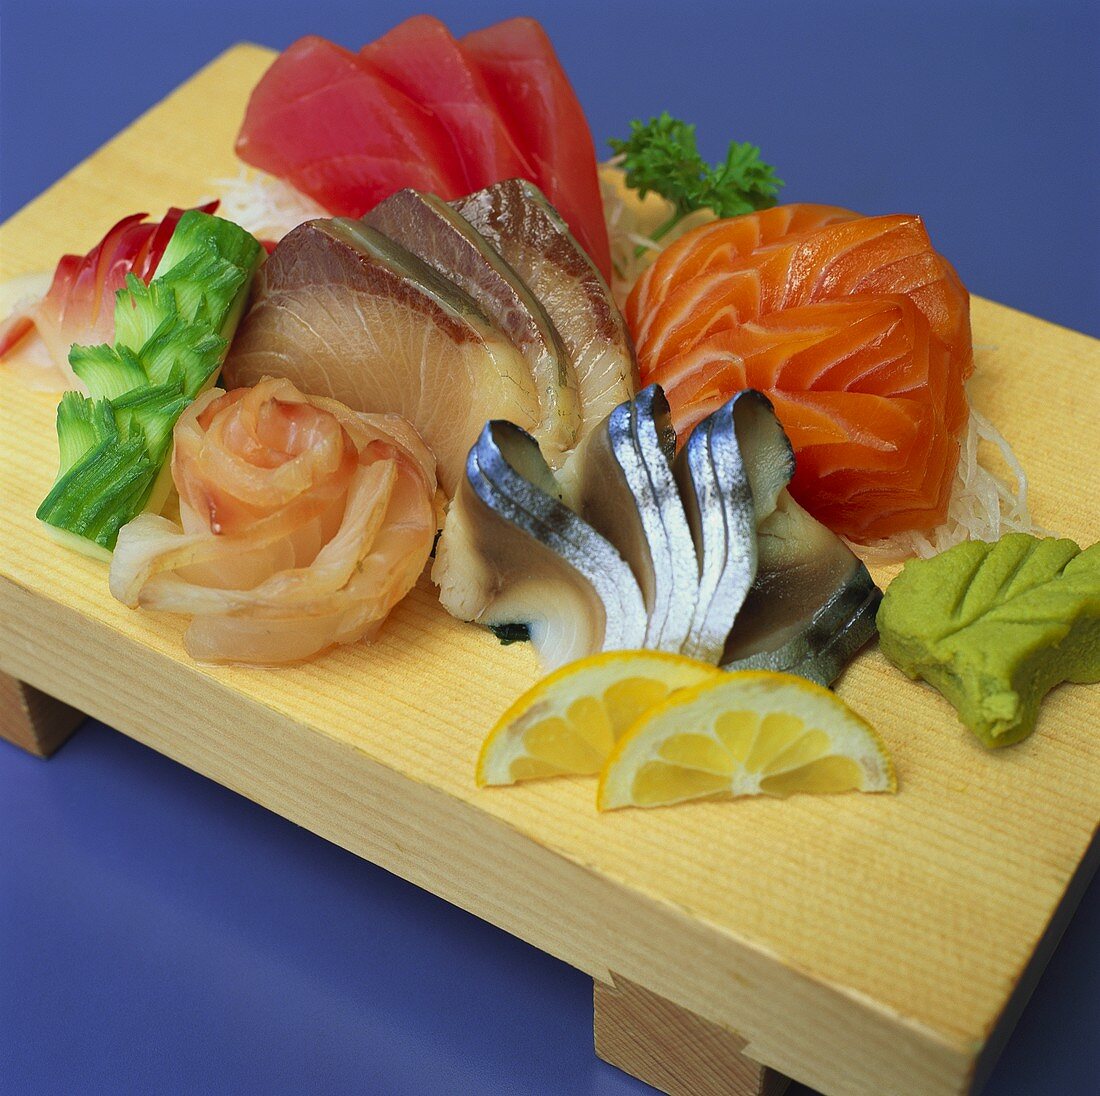 Sashimi with wasabi on wooden board